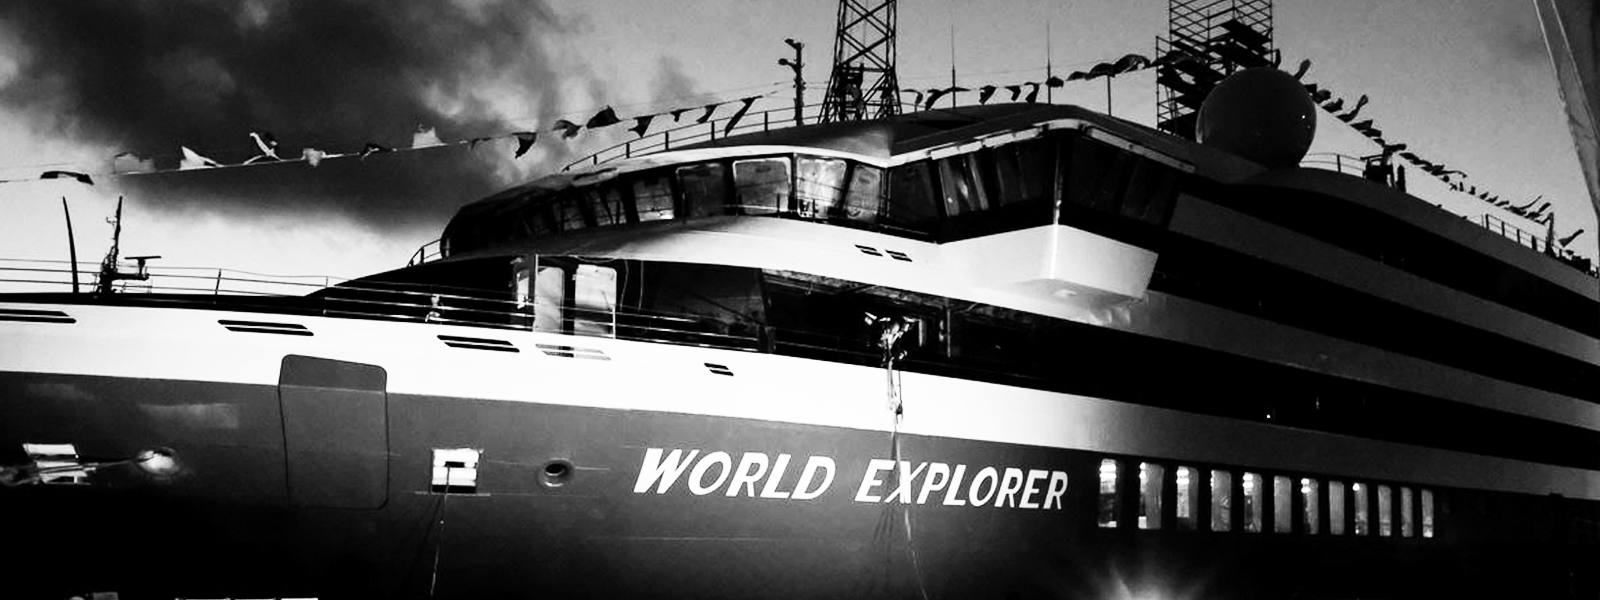 Construção do MS World Explorer